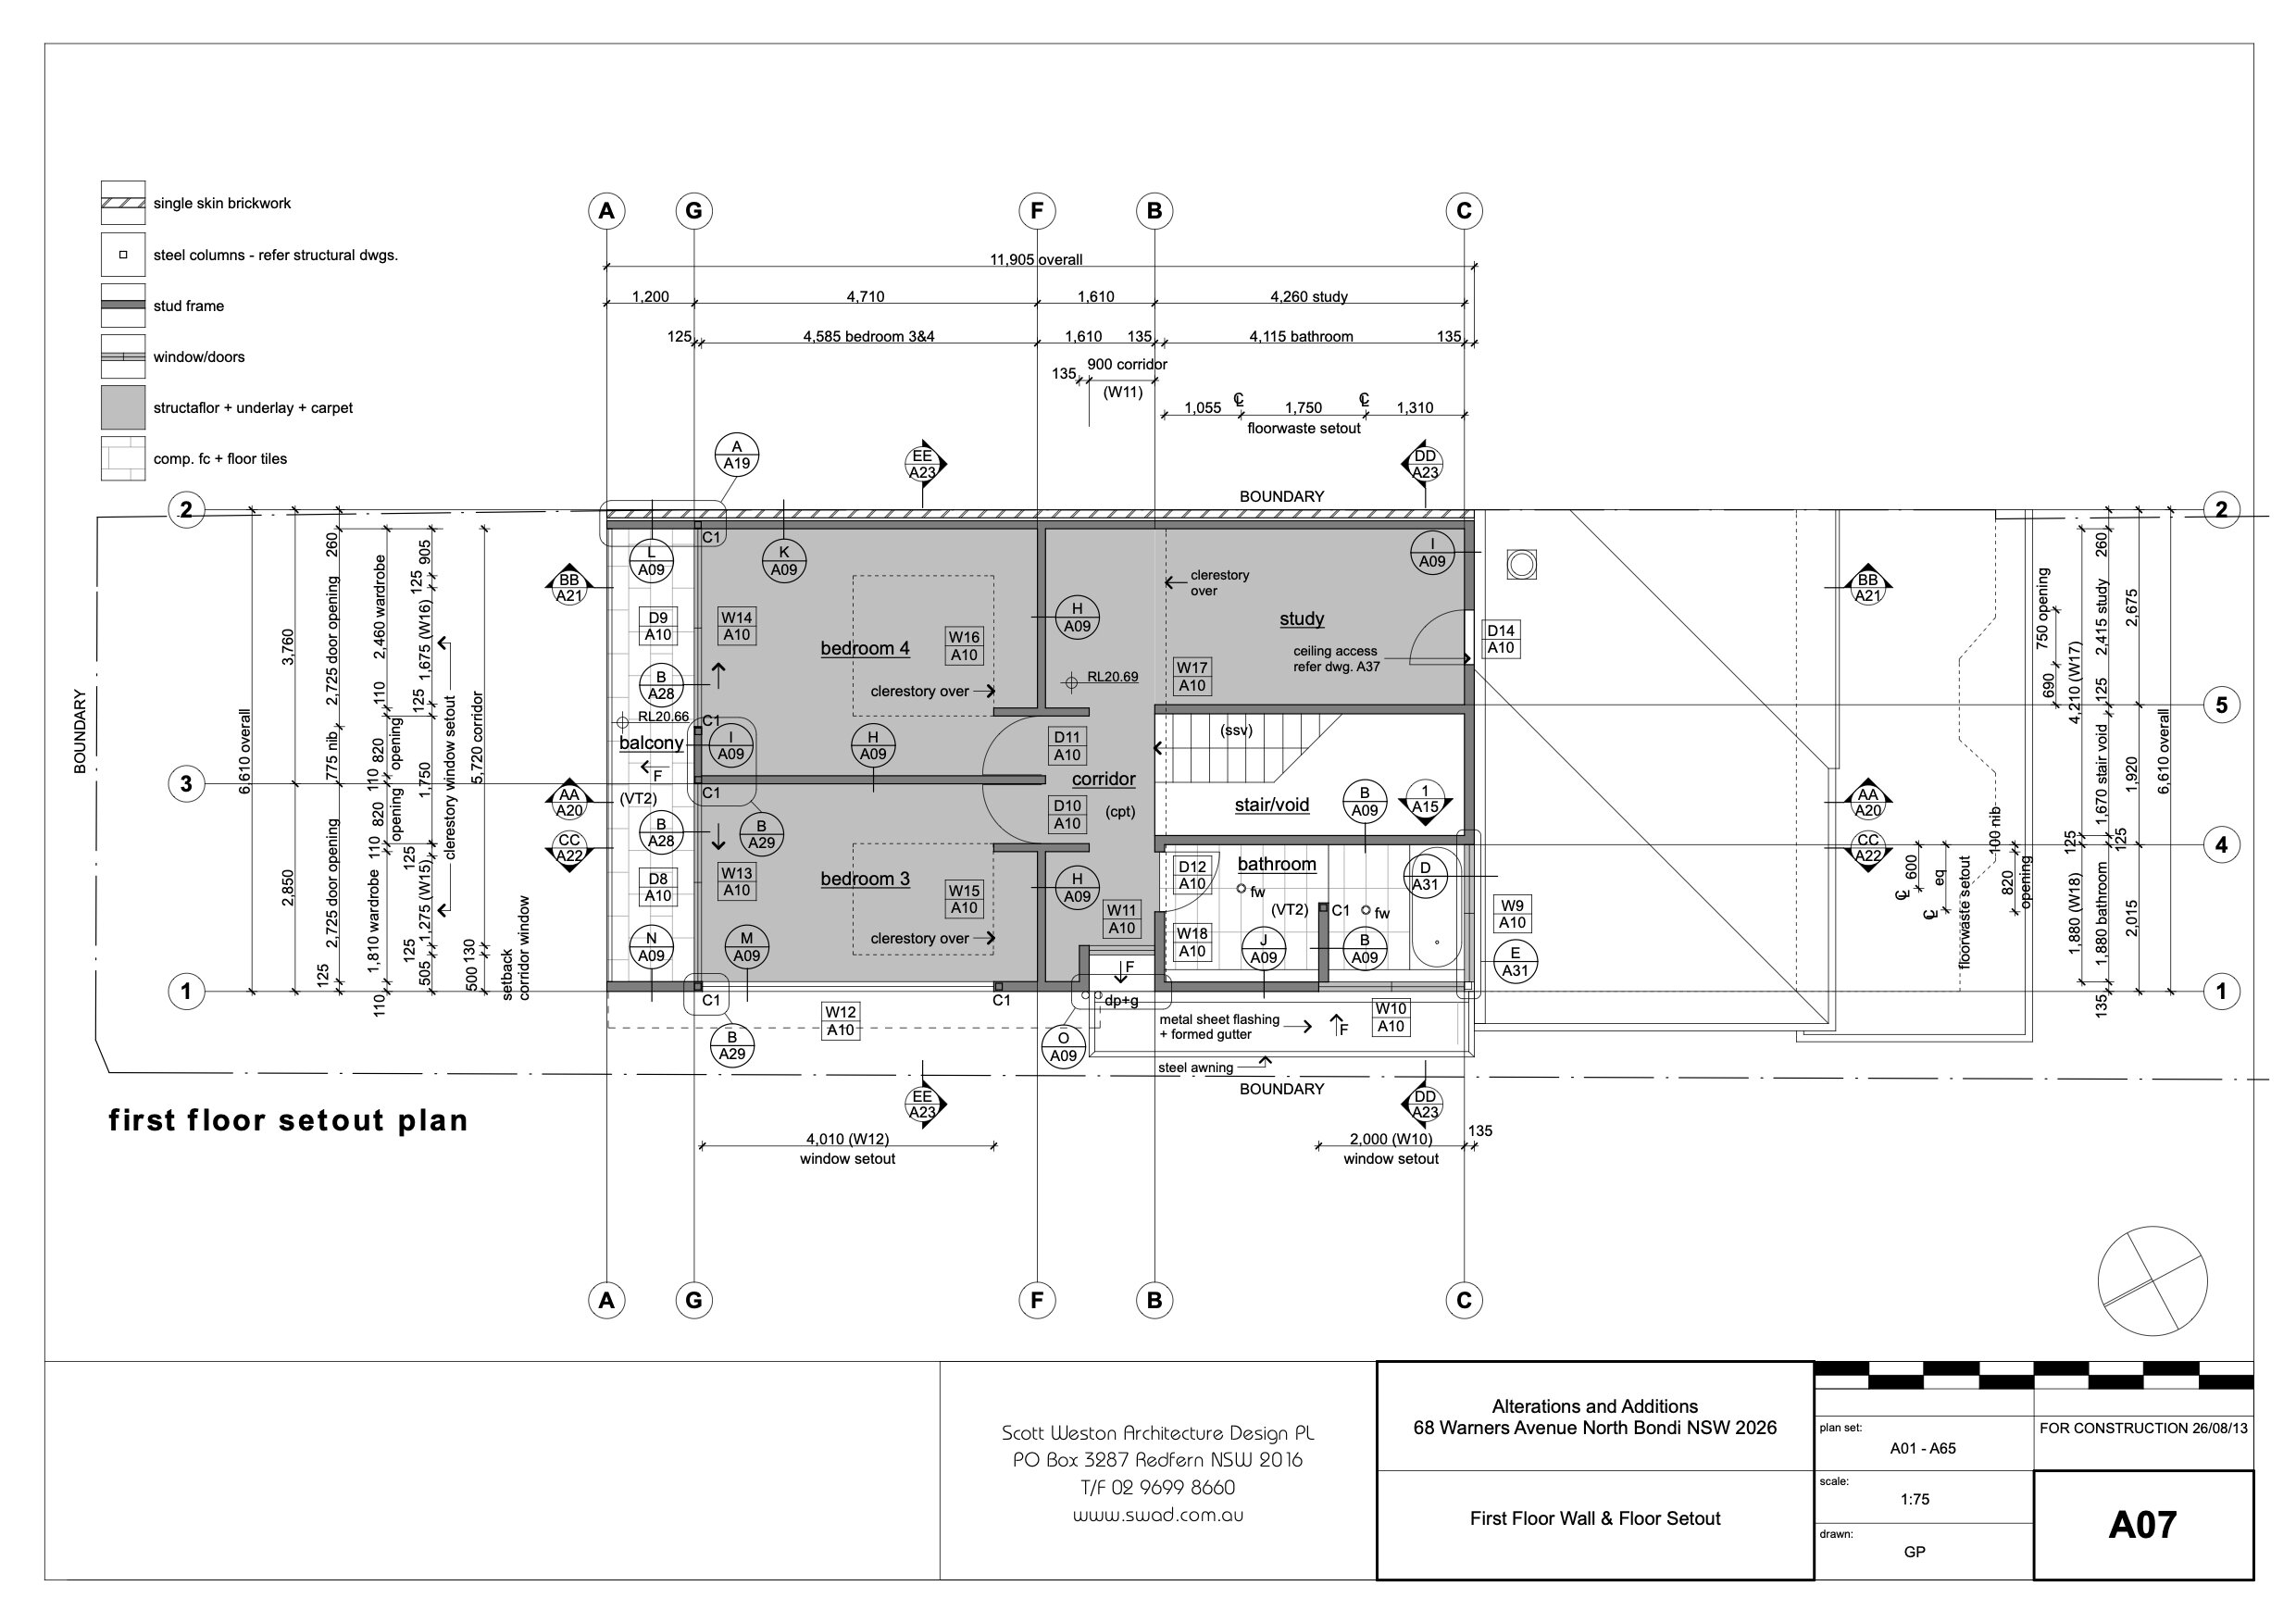 A07 First Floor Wall & Floor Setout.jpg